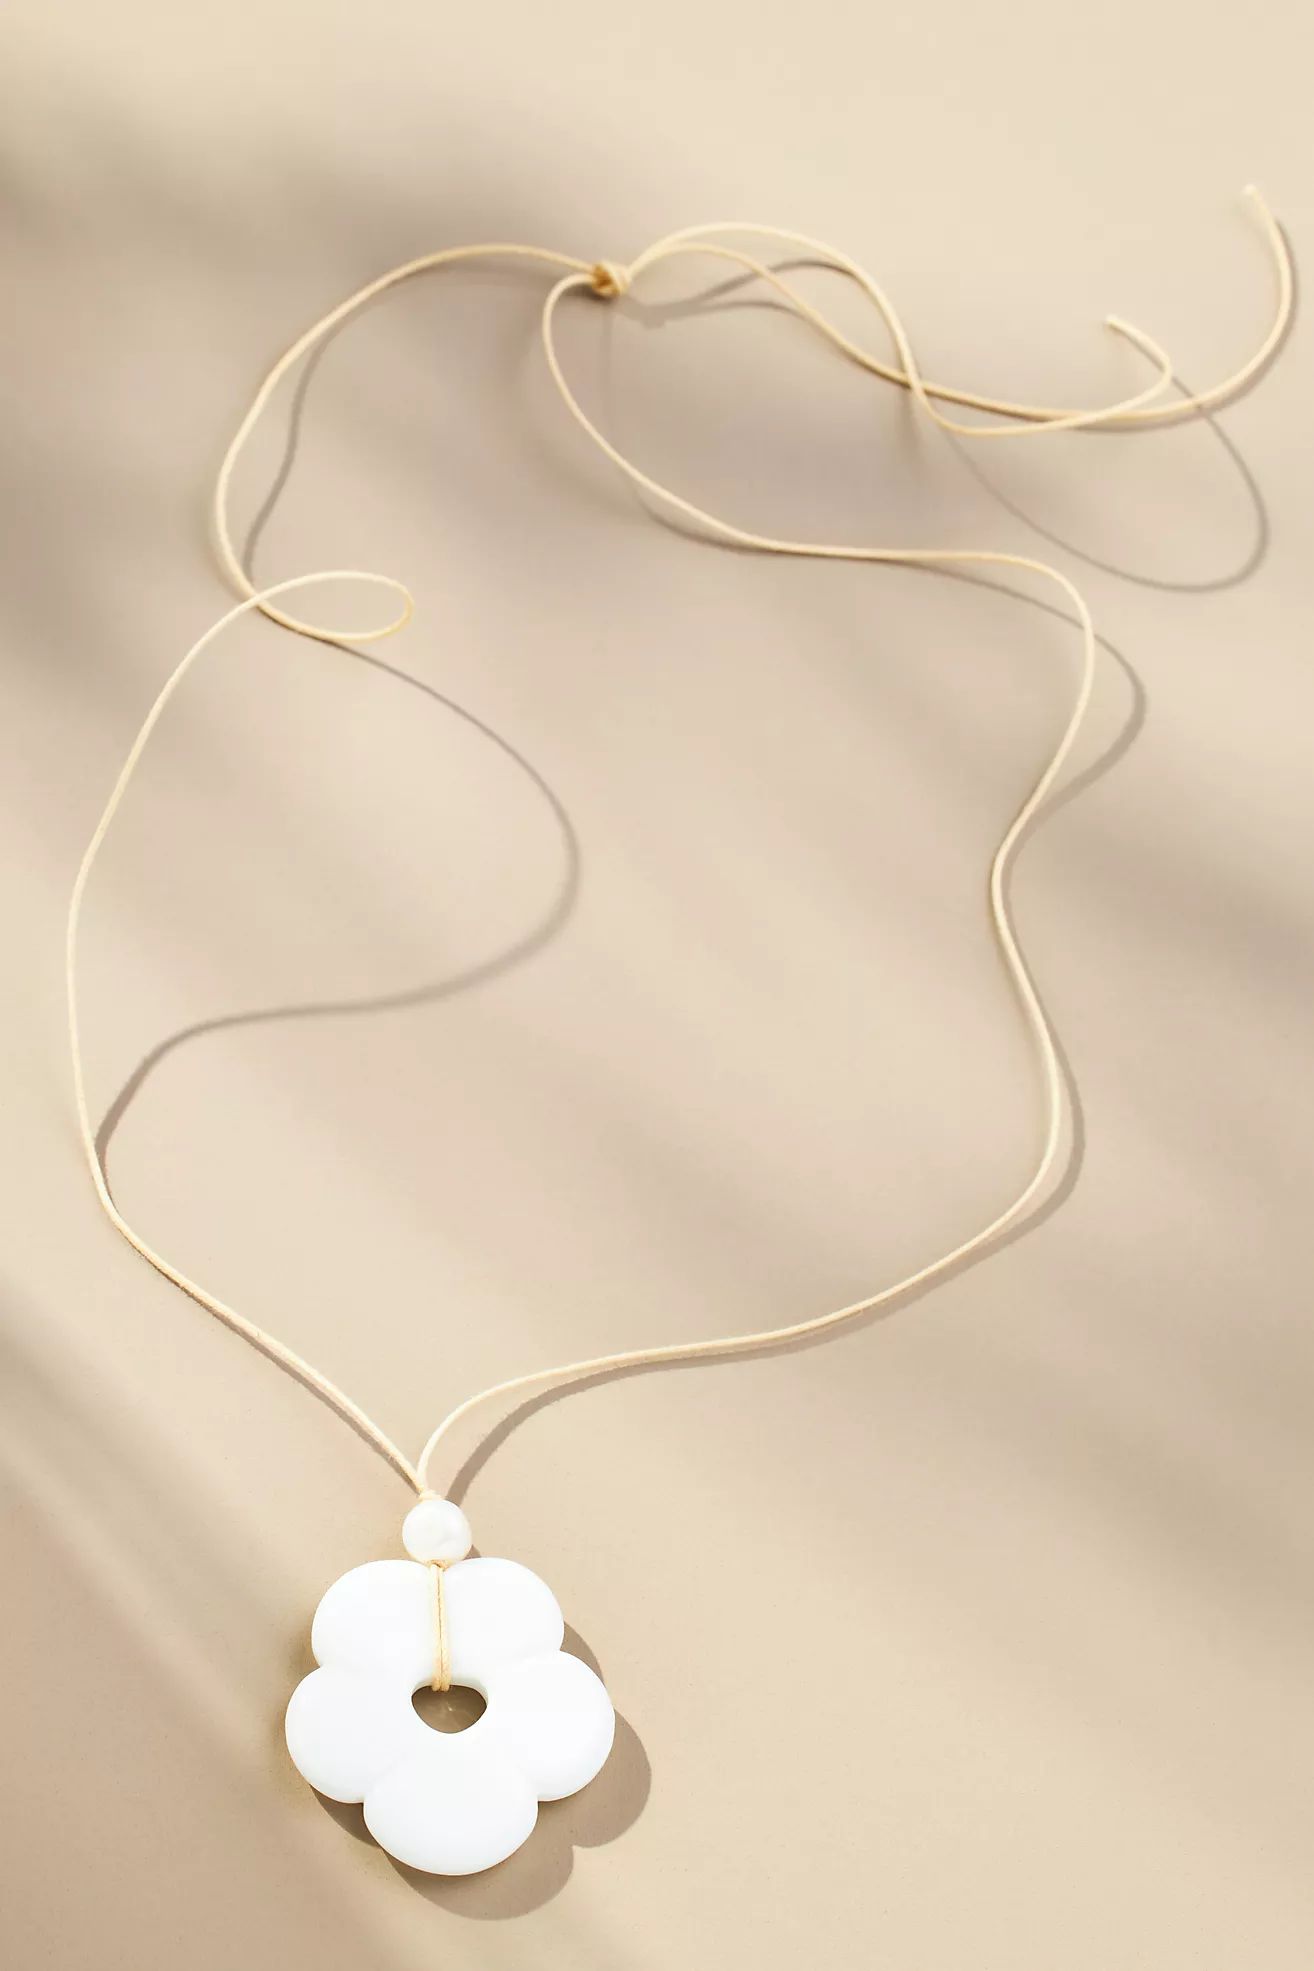 Frasier Sterling Floral Pendant Necklace | Anthropologie (US)